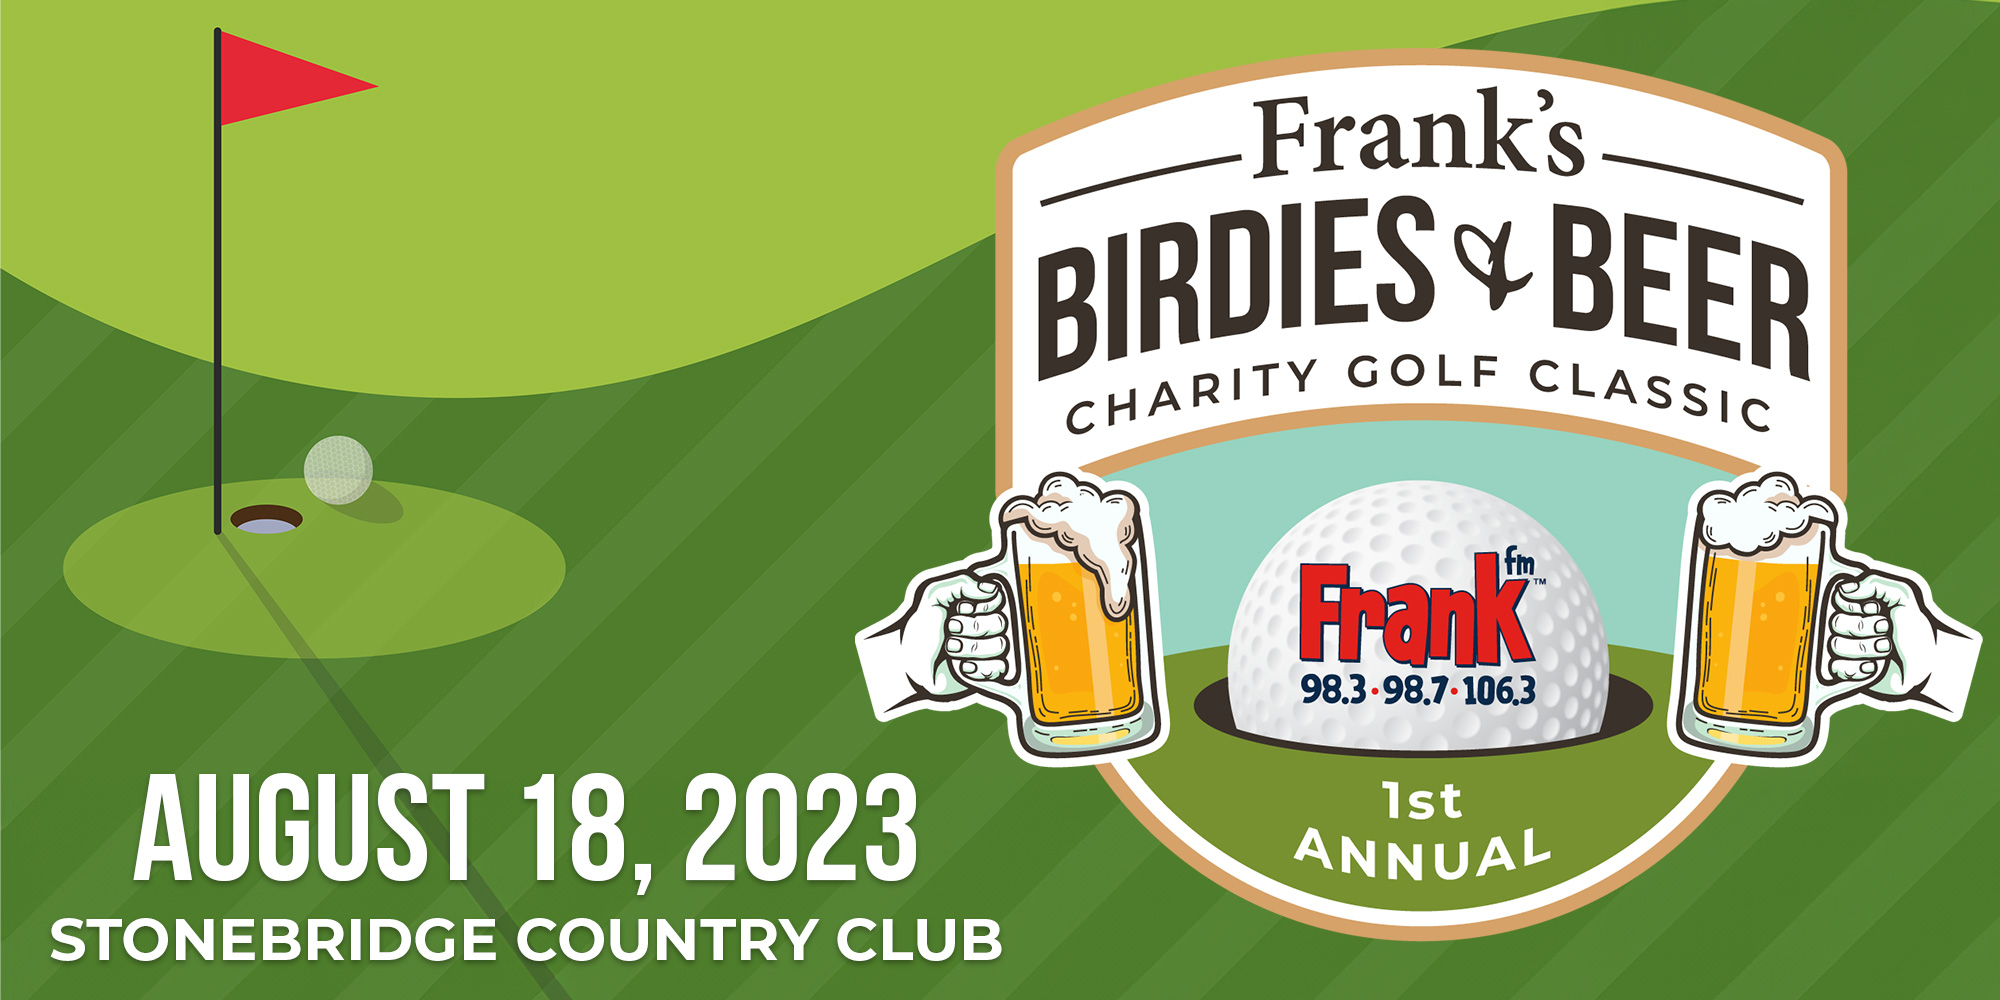 Frank’s Birdies & Beer Charity Golf Classic – Registration Now Open!